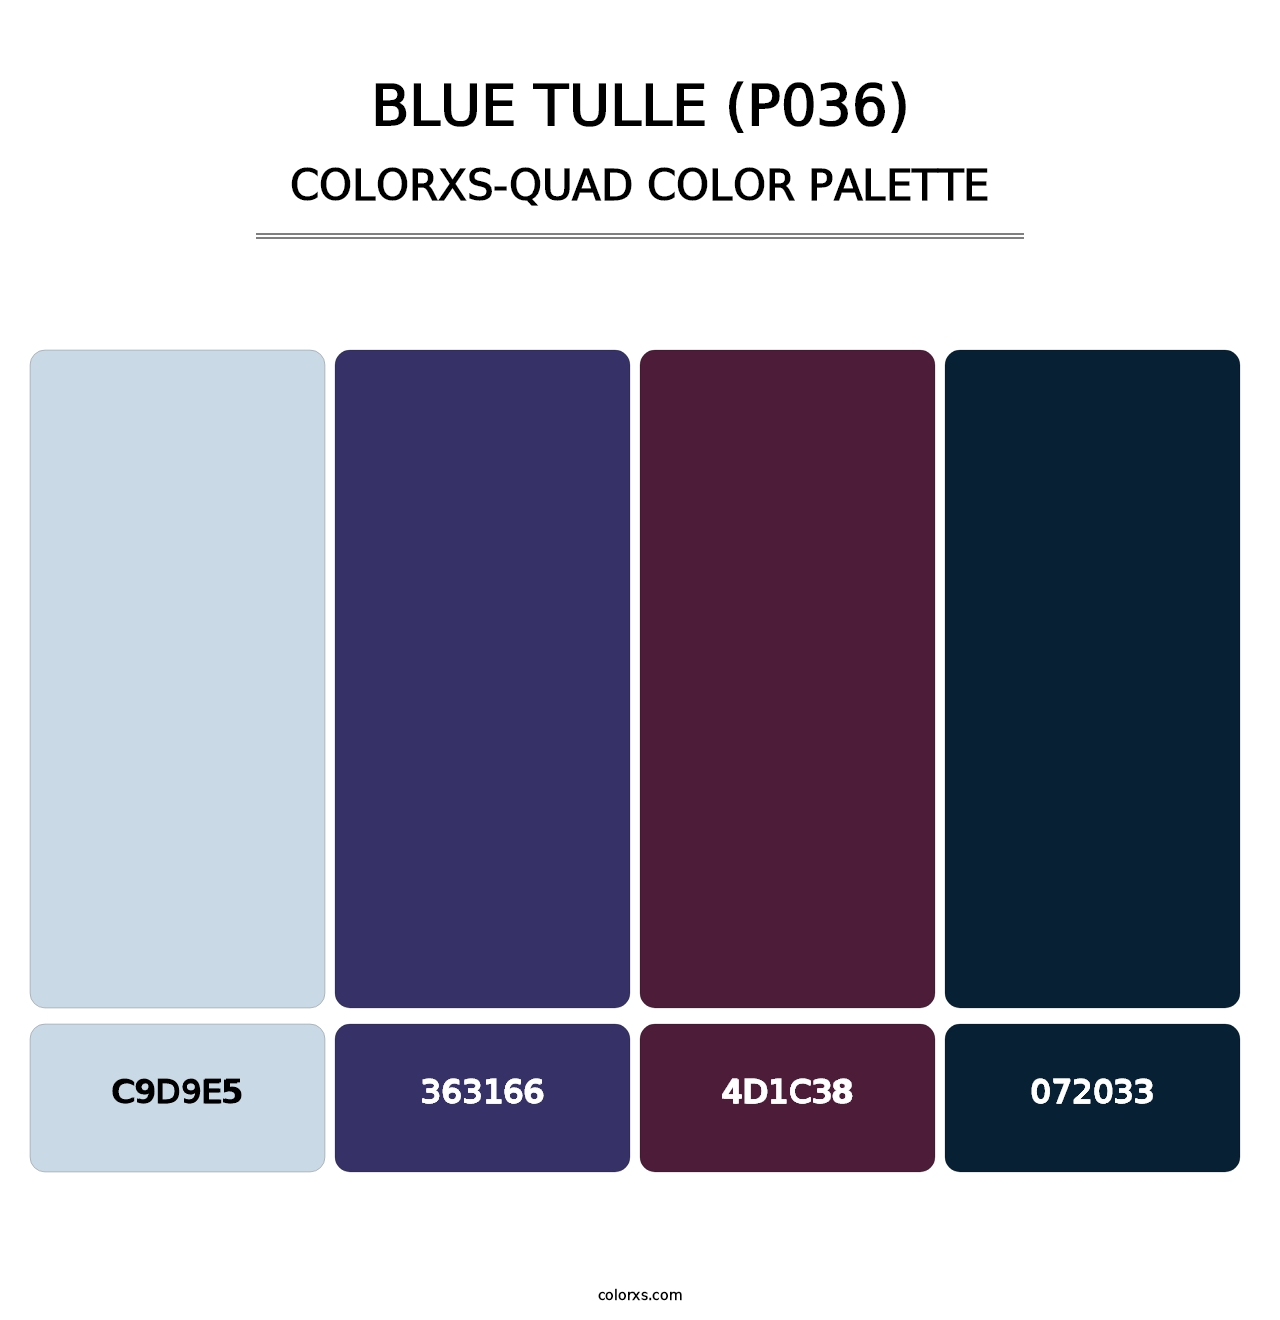 Blue Tulle (P036) - Colorxs Quad Palette